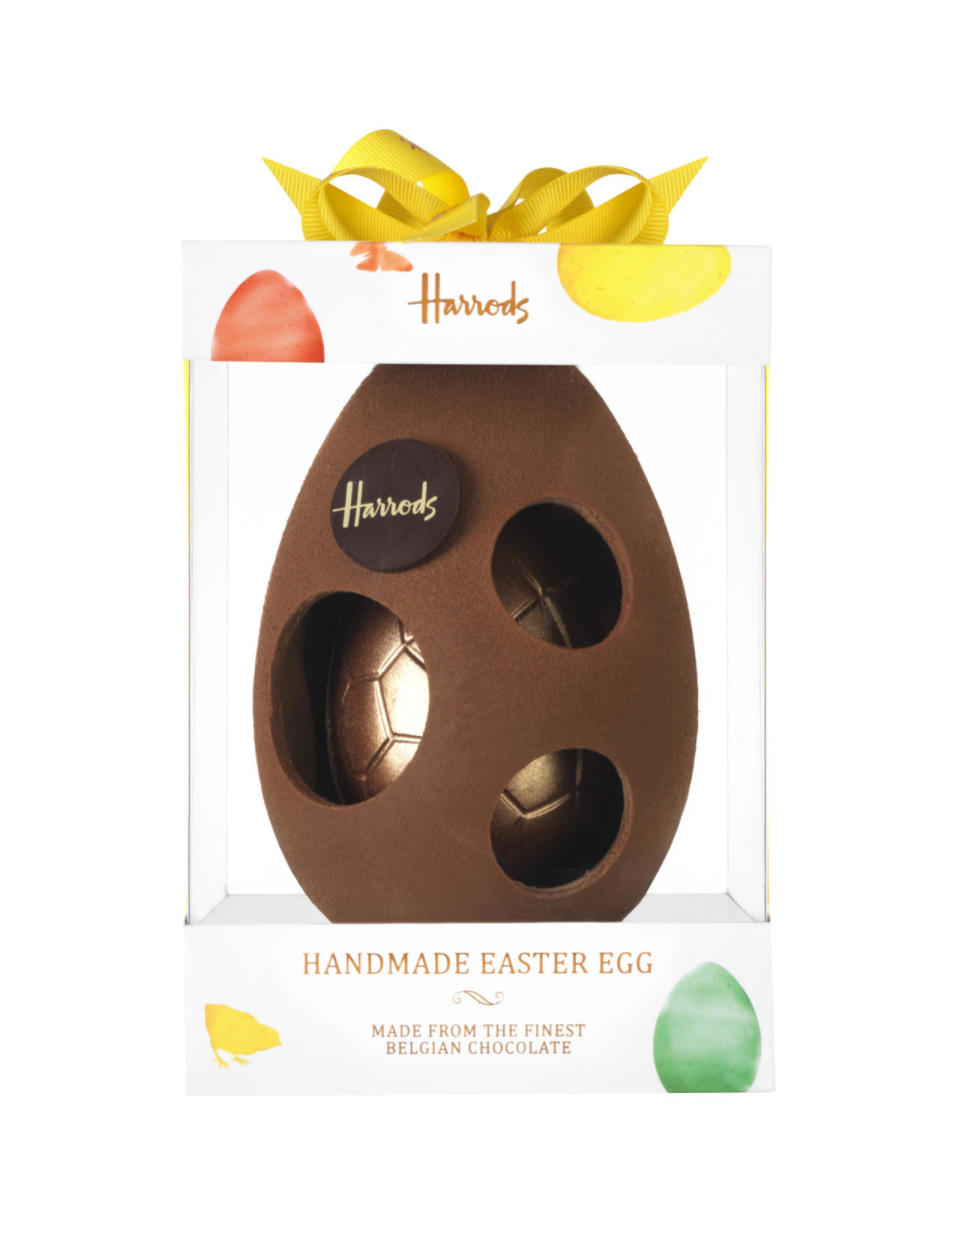 Harrods Handmade Easter Egg: 6/10